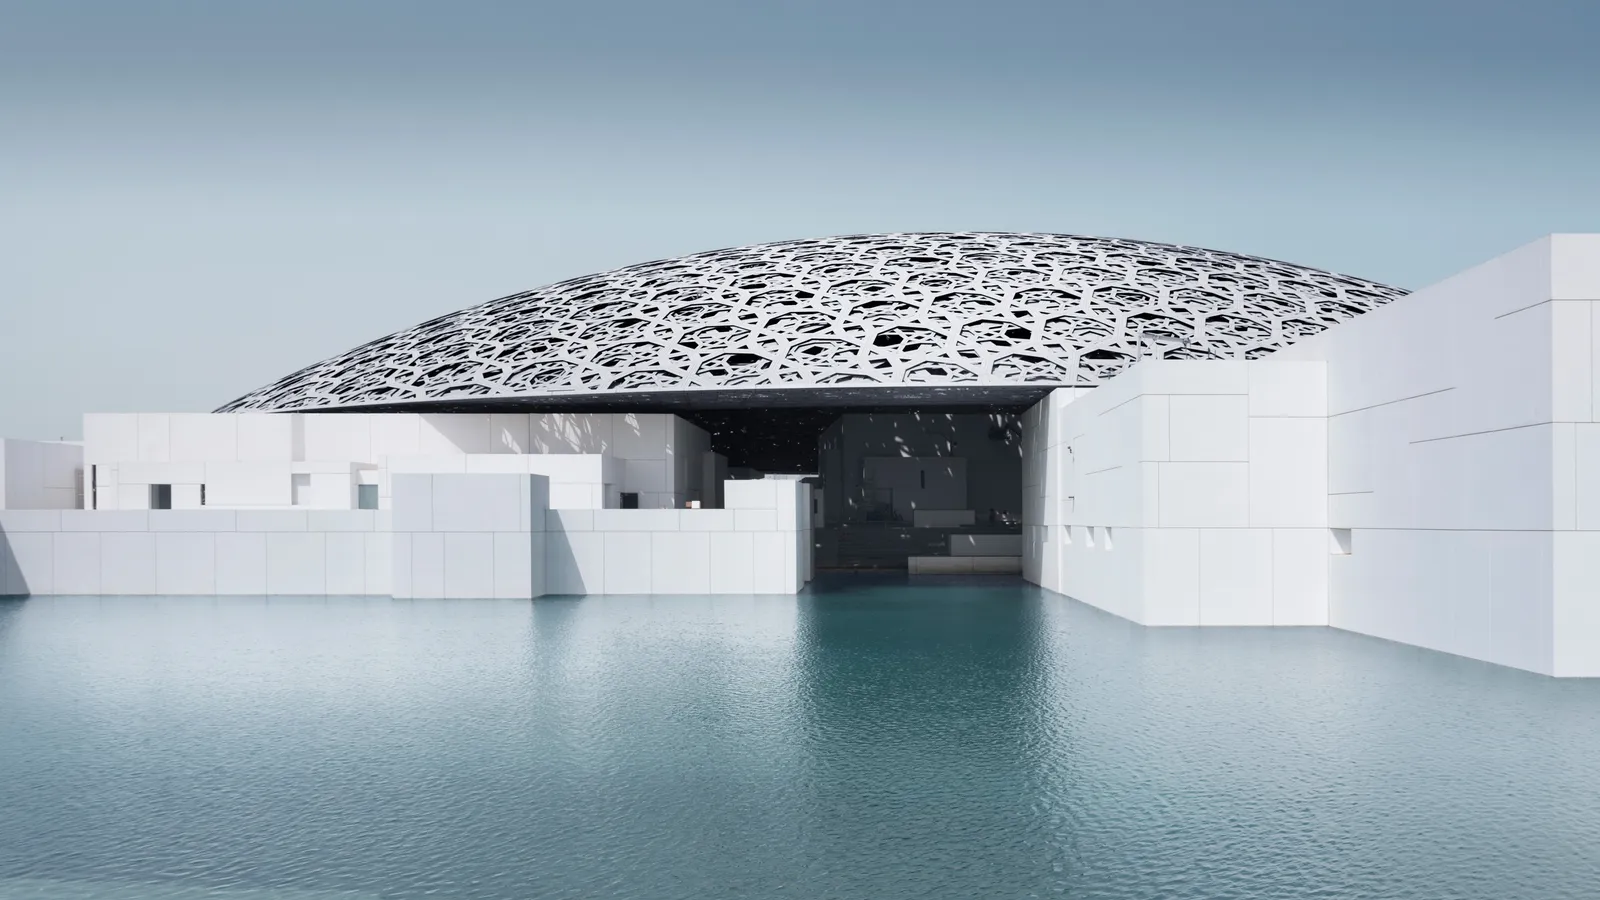 hưng bây giờ - hơn 650 triệu USD sau đó - bảo tàng Louvre Abu Dhabi sẽ ra mắt vào ngày 11 tháng 11 , sau khi vượt qua thời hạn khai mạc năm 2016 khác.  Được thiết kế bởi kiến ​​trúc sư người Pháp Jean Nouvel—người đã đoạt giải Pritzker năm 2008 và trước đây là người chủ trì Viện Institut du Monde Arabe của Paris —bảo tàng sẽ là cơ sở đầu tiên trong số nhiều tổ chức văn hóa được lên kế hoạch đặt chân đến Đảo Saadiyat. Tất cả đều sẽ có những nét kiến ​​trúc xuất sắc như nhau, với một Guggenheim được mong đợi từ Frank Gehry; một trung tâm biểu diễn nghệ thuật của Zaha Hadid quá cố ; một bảo tàng hàng hải từ Tadao Ando; và một bảo tàng dành riêng cho lịch sử của UAE và người sáng lập của nó, Sheikh Zayed Bin Sultan Al Nahyan, từ Norman Foster.  Mục tiêu là biến Saadiyat—và nói rộng ra là Abu Dhabi—một thánh địa văn hóa, một thánh địa sẽ lôi kéo du khách ở lại quanh thành phố chứ không chỉ bay qua trên đường đến những địa điểm xa xôi khác.